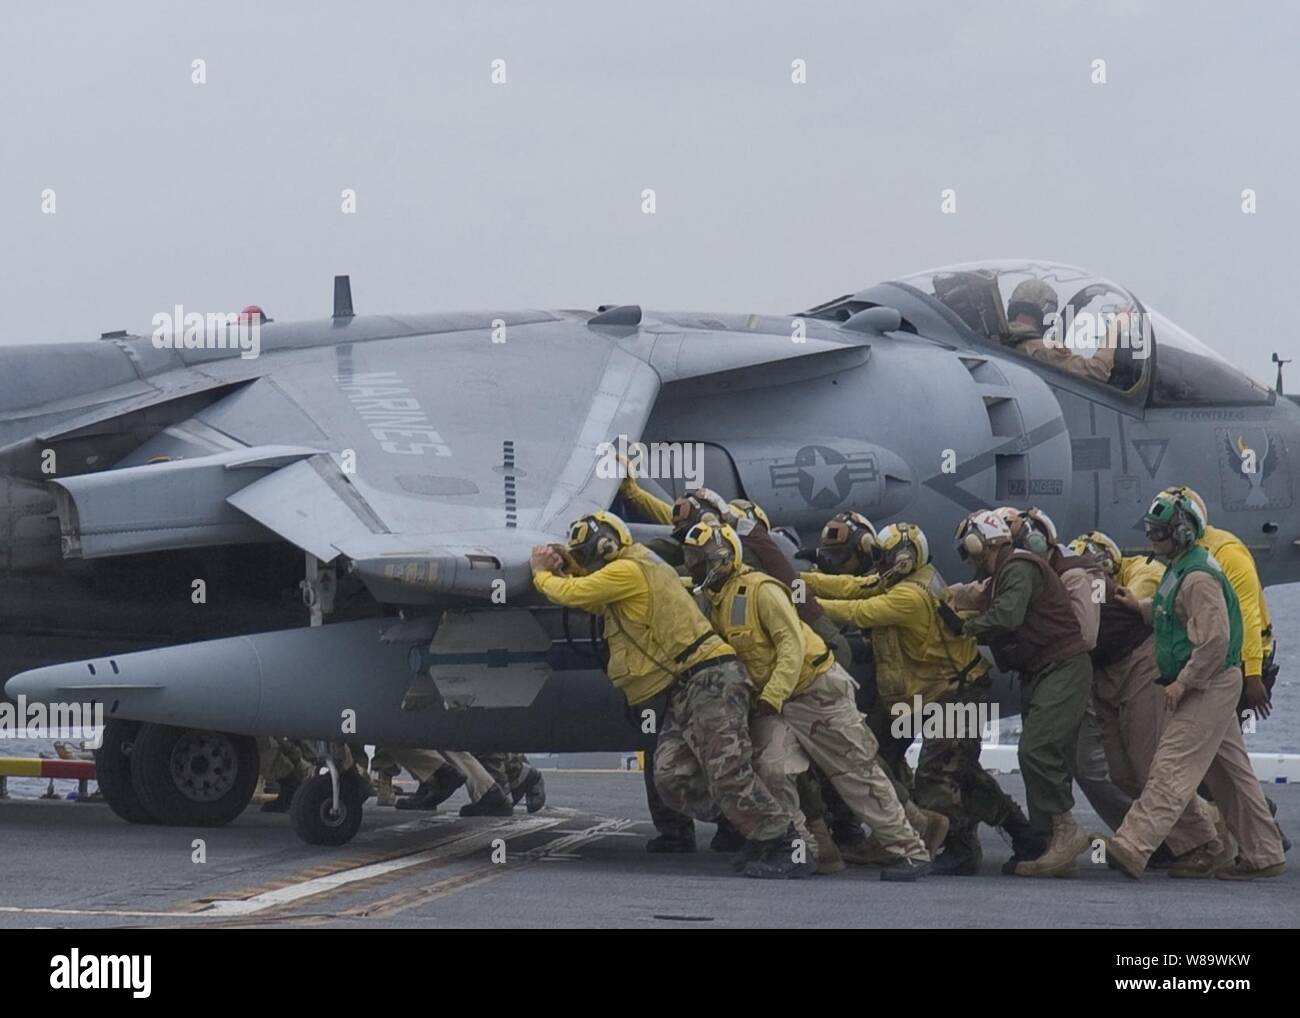 Los miembros de las tripulaciones de la Marina de EE.UU. Presione un AV-8B Harrier avión sobre una aeronave ascensor a bordo del buque de asalto anfibio de la clase Wasp USS Essex (LHD 2) El 29 de abril de 2008. El Essex es el barco de plomo de un forward ñdeployed expedicionaria de EE.UU. Grupo de ataque. Foto de stock